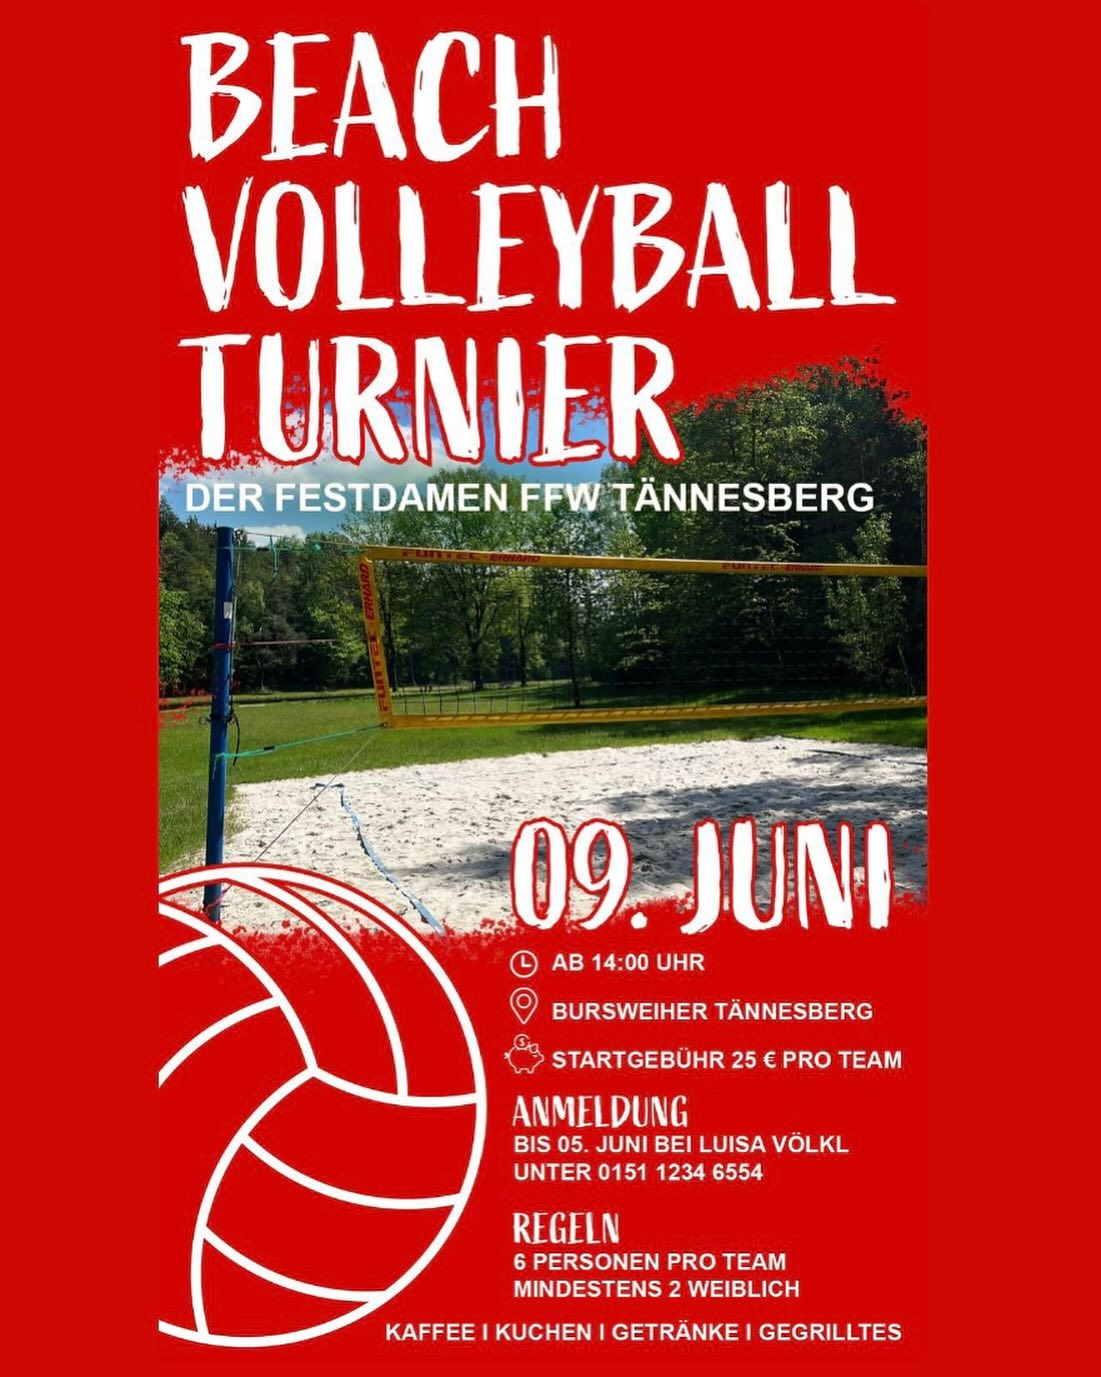 Volleyball Turnier FFW Tännesberg